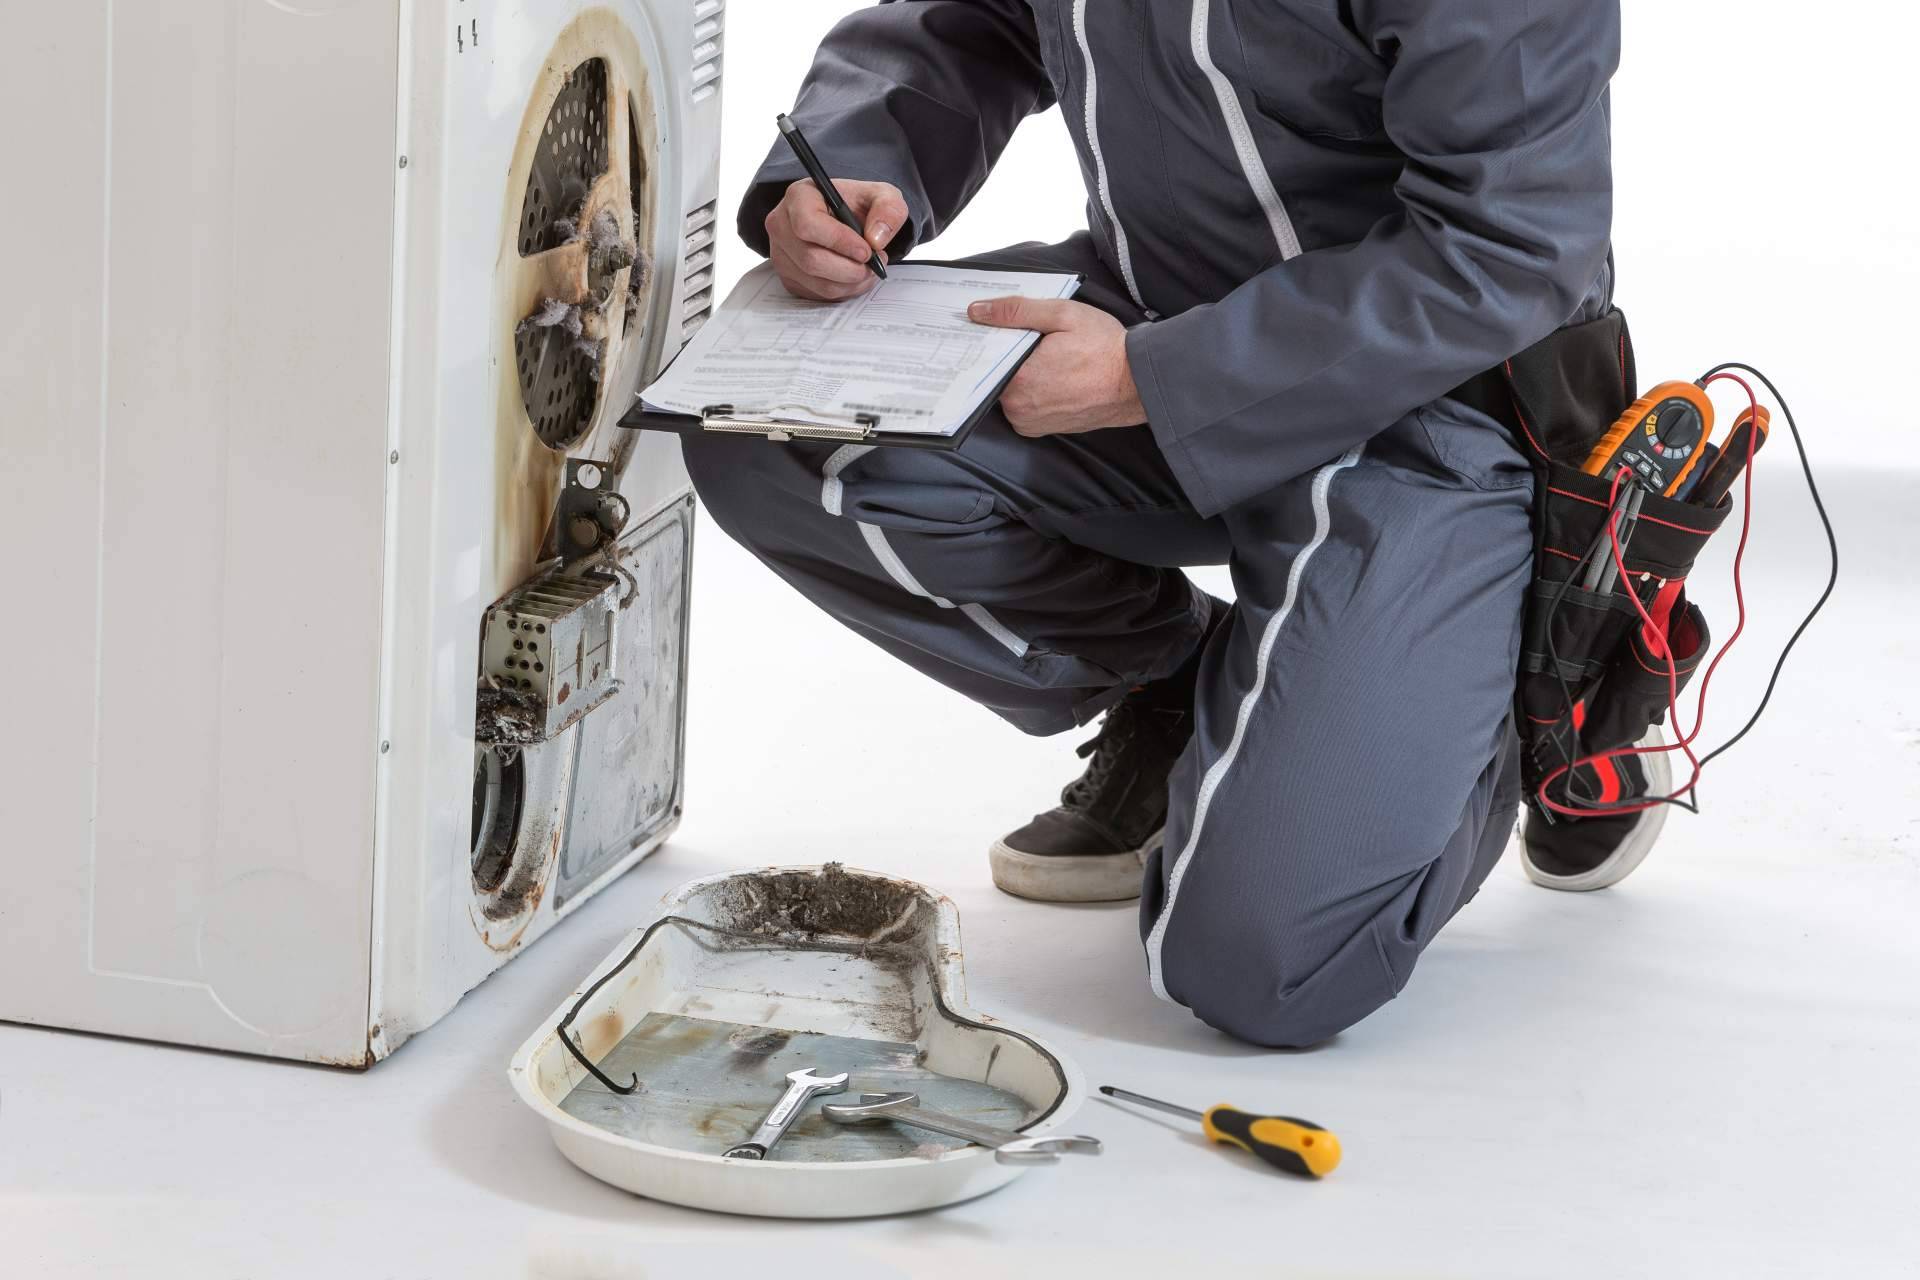 Servicio Técnico Balay Valladolid brinda un servicio de reparación de electrodomésticos